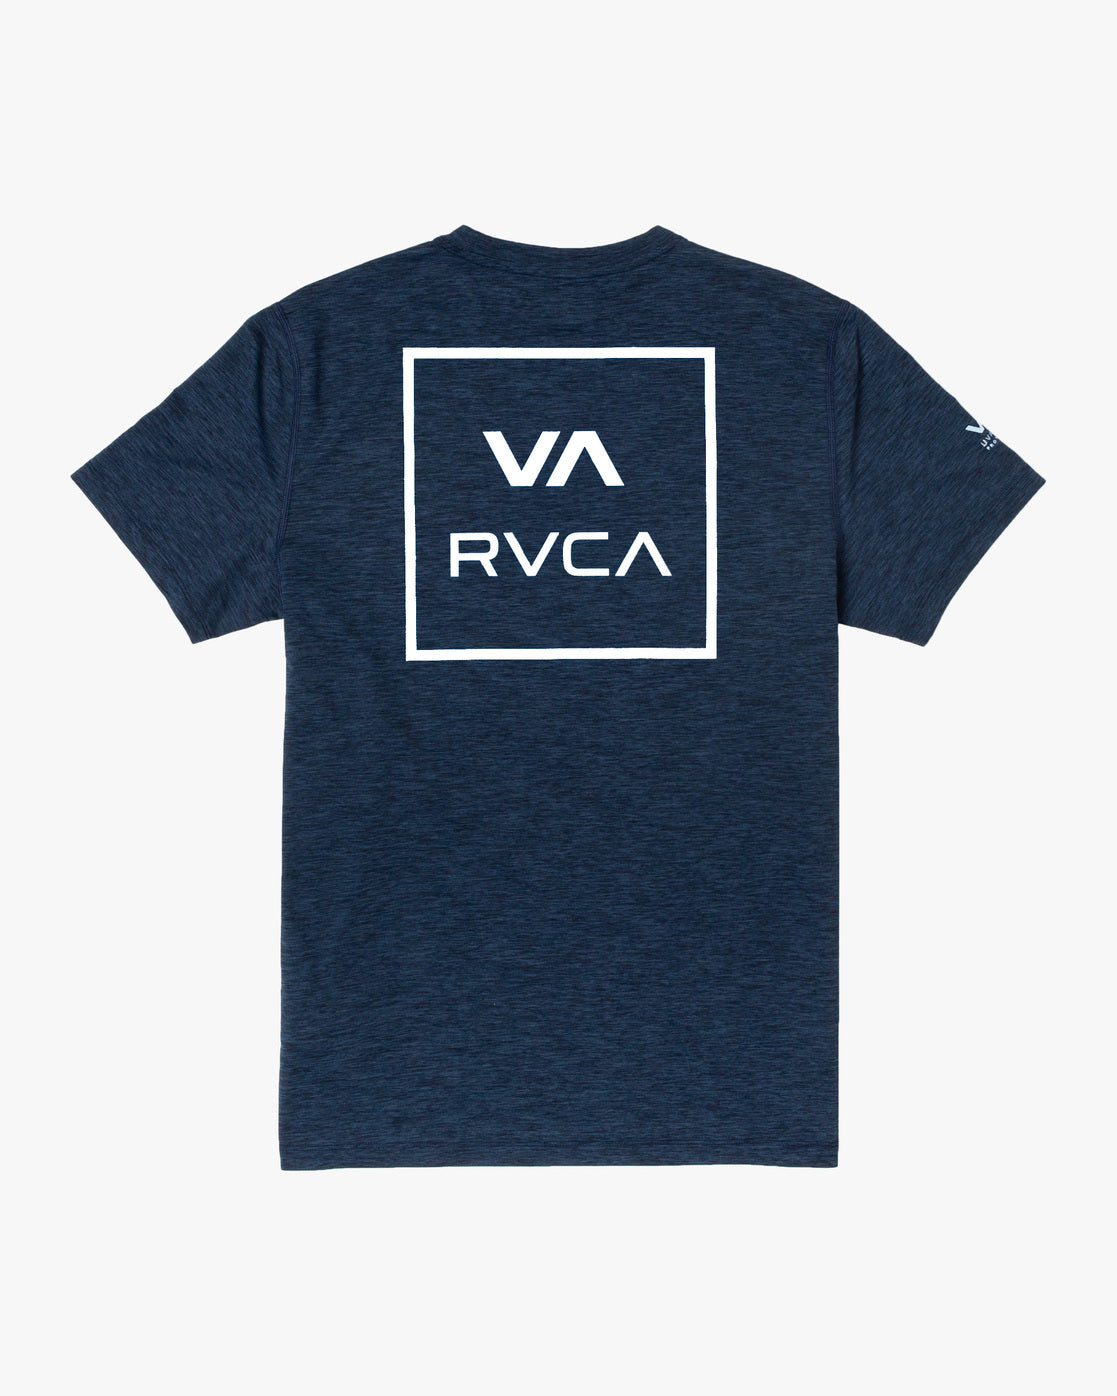 RVCA RVCA Short Sleeve Rashguard Boys Navy Heather Youth Rashguards RVCA 